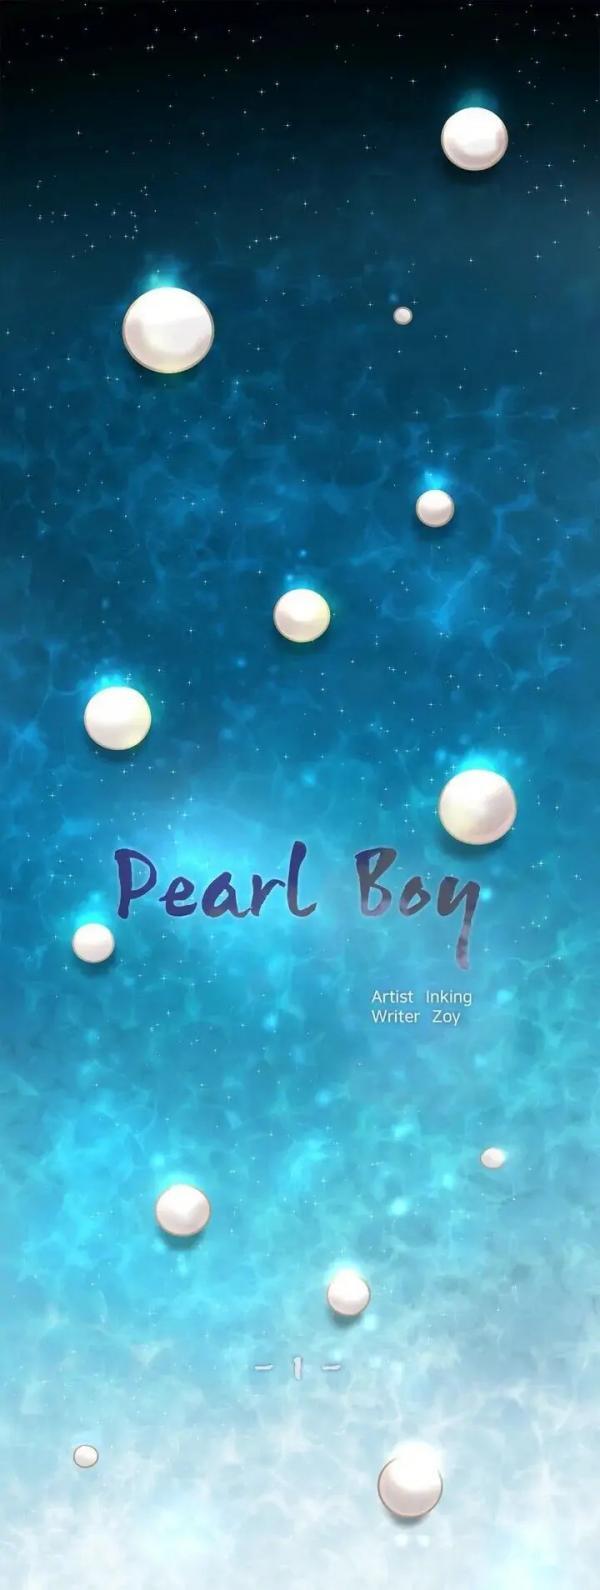 Pearl boy 🇨🇿